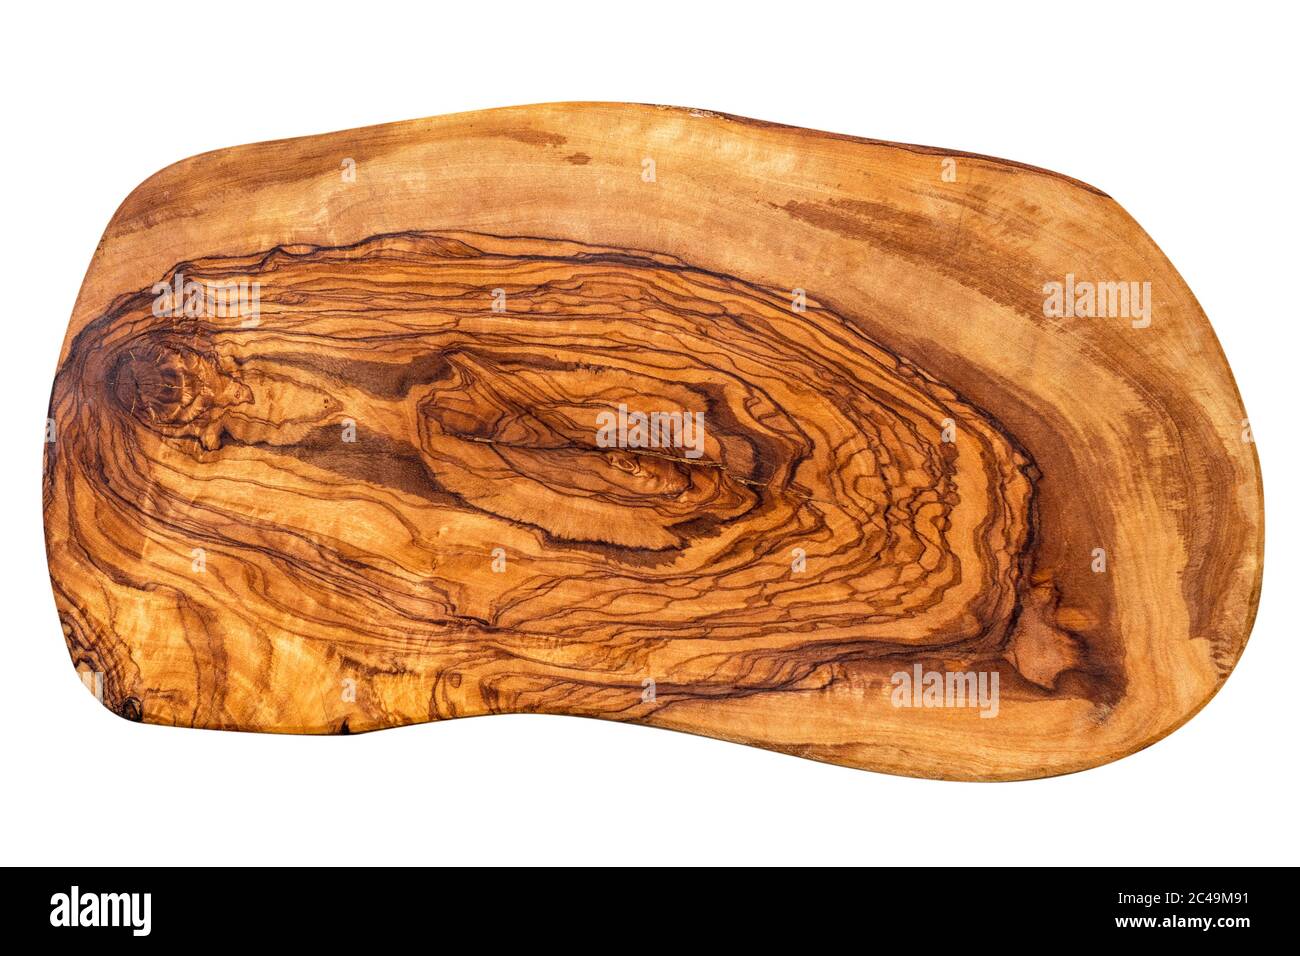 Di legno di ulivo immagini e fotografie stock ad alta risoluzione - Alamy